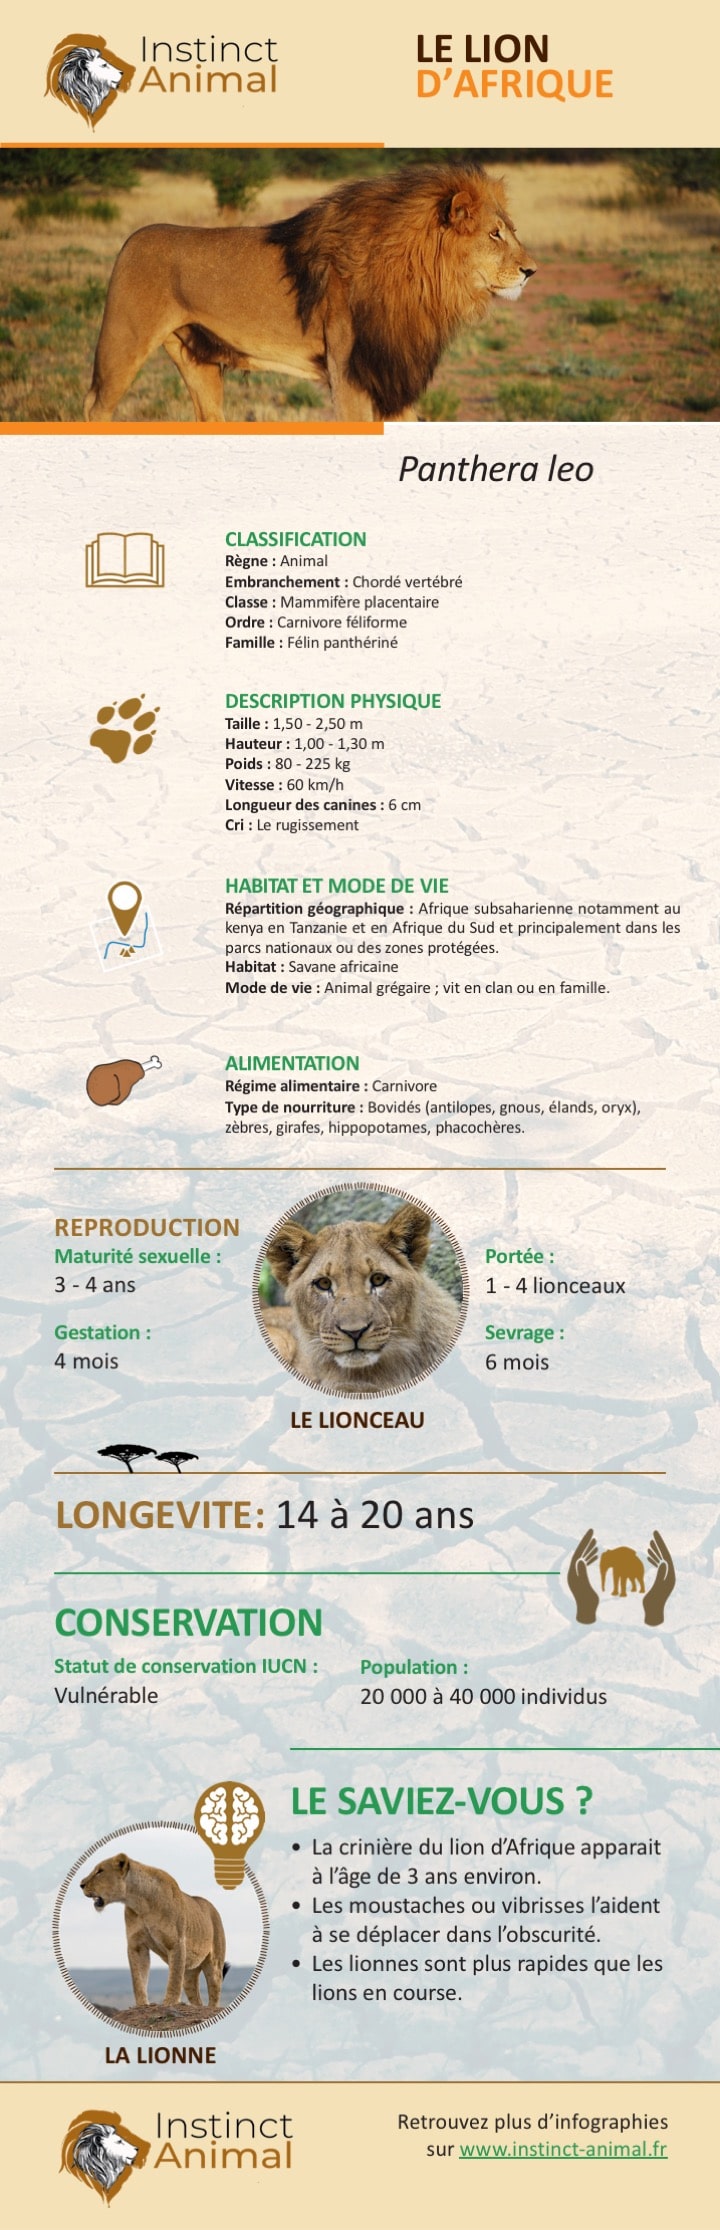 Lion d'Afrique - Infographie, description et informations - Instinct Animal